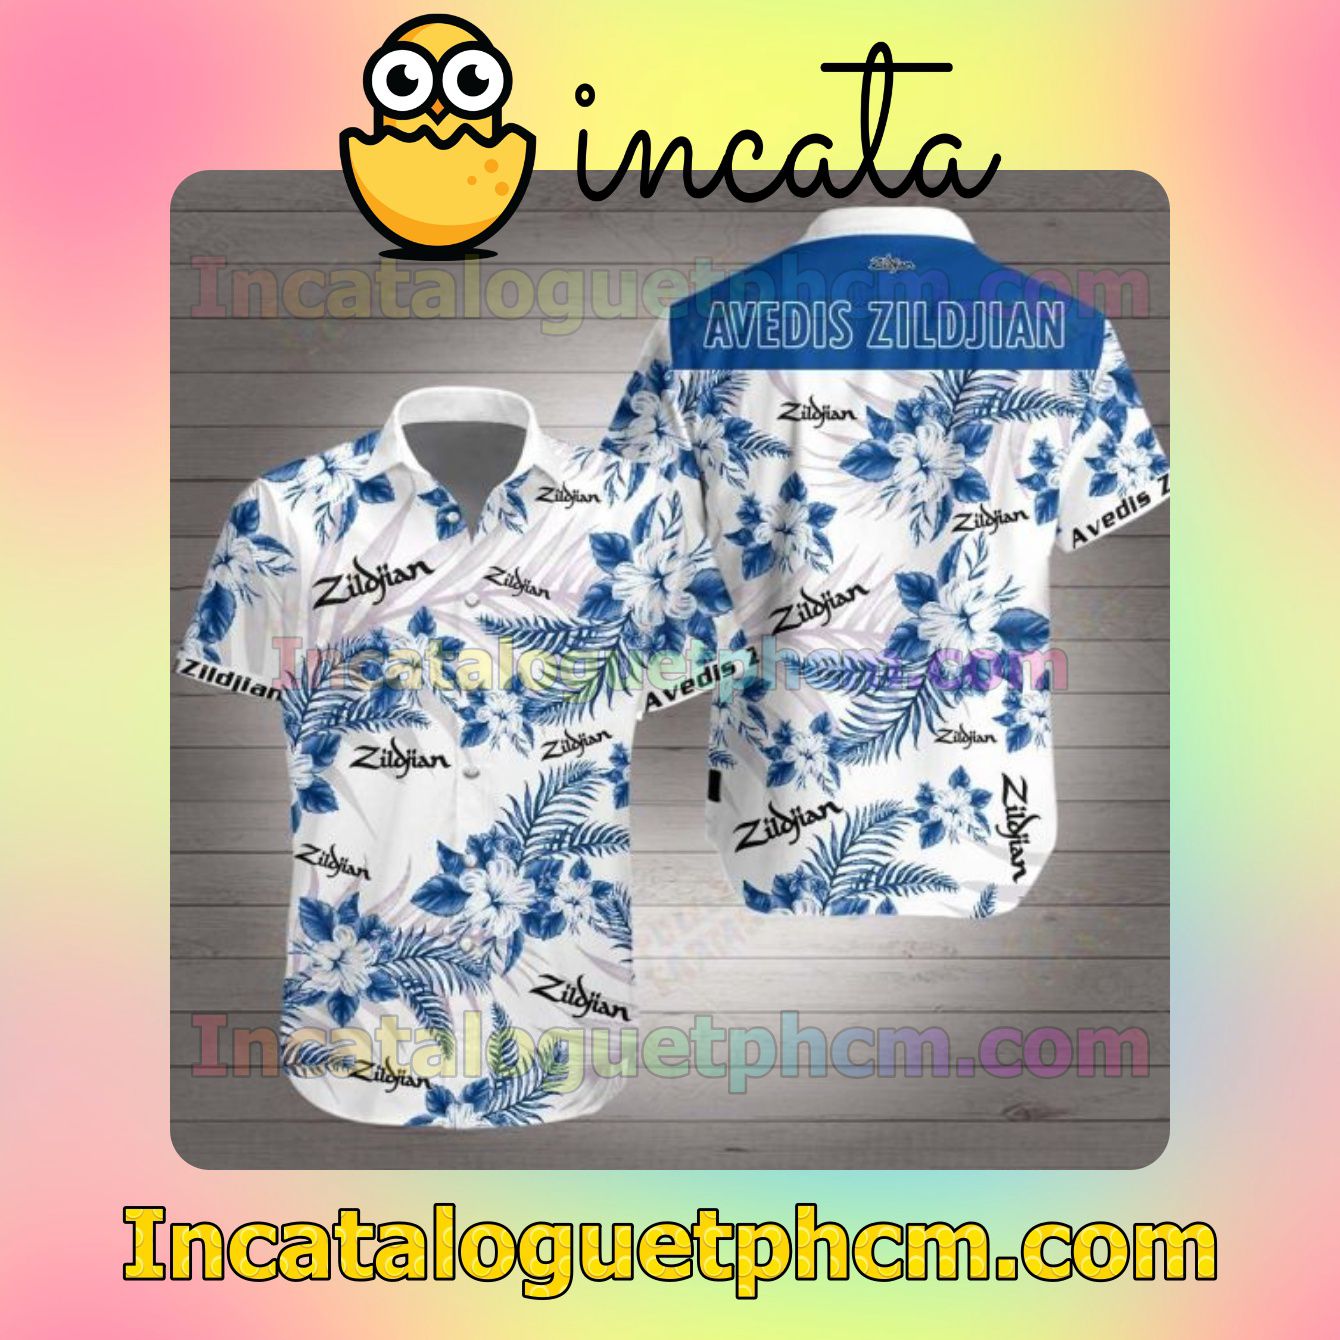 Avedis Zildjian Blue Tropical Floral White Men's Casual Shirts